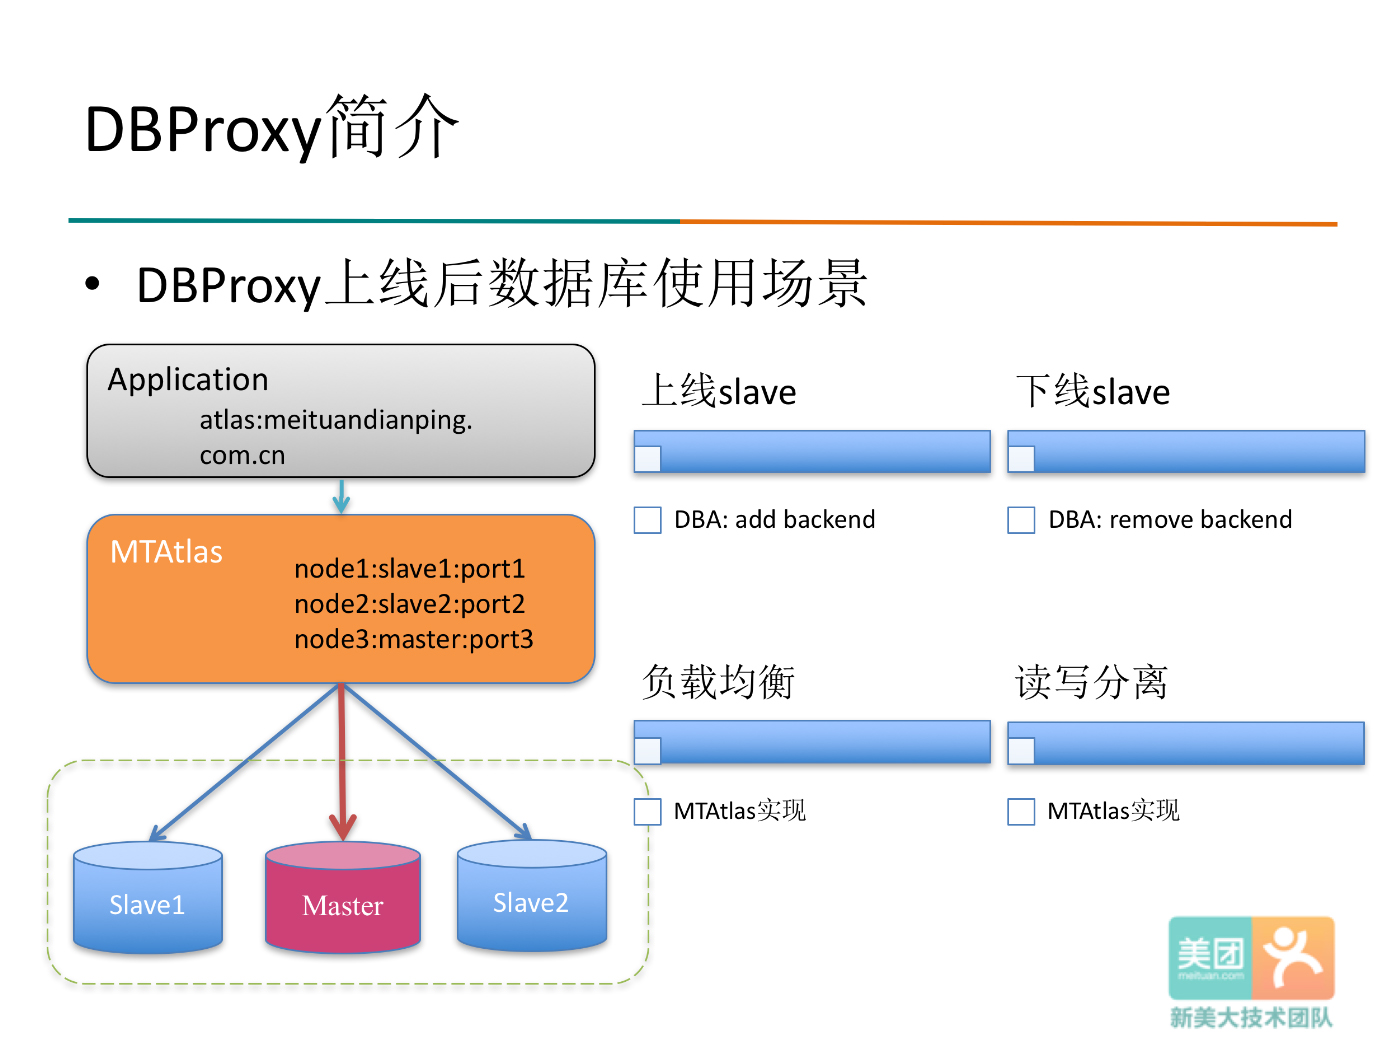 DBProxy的主要功能